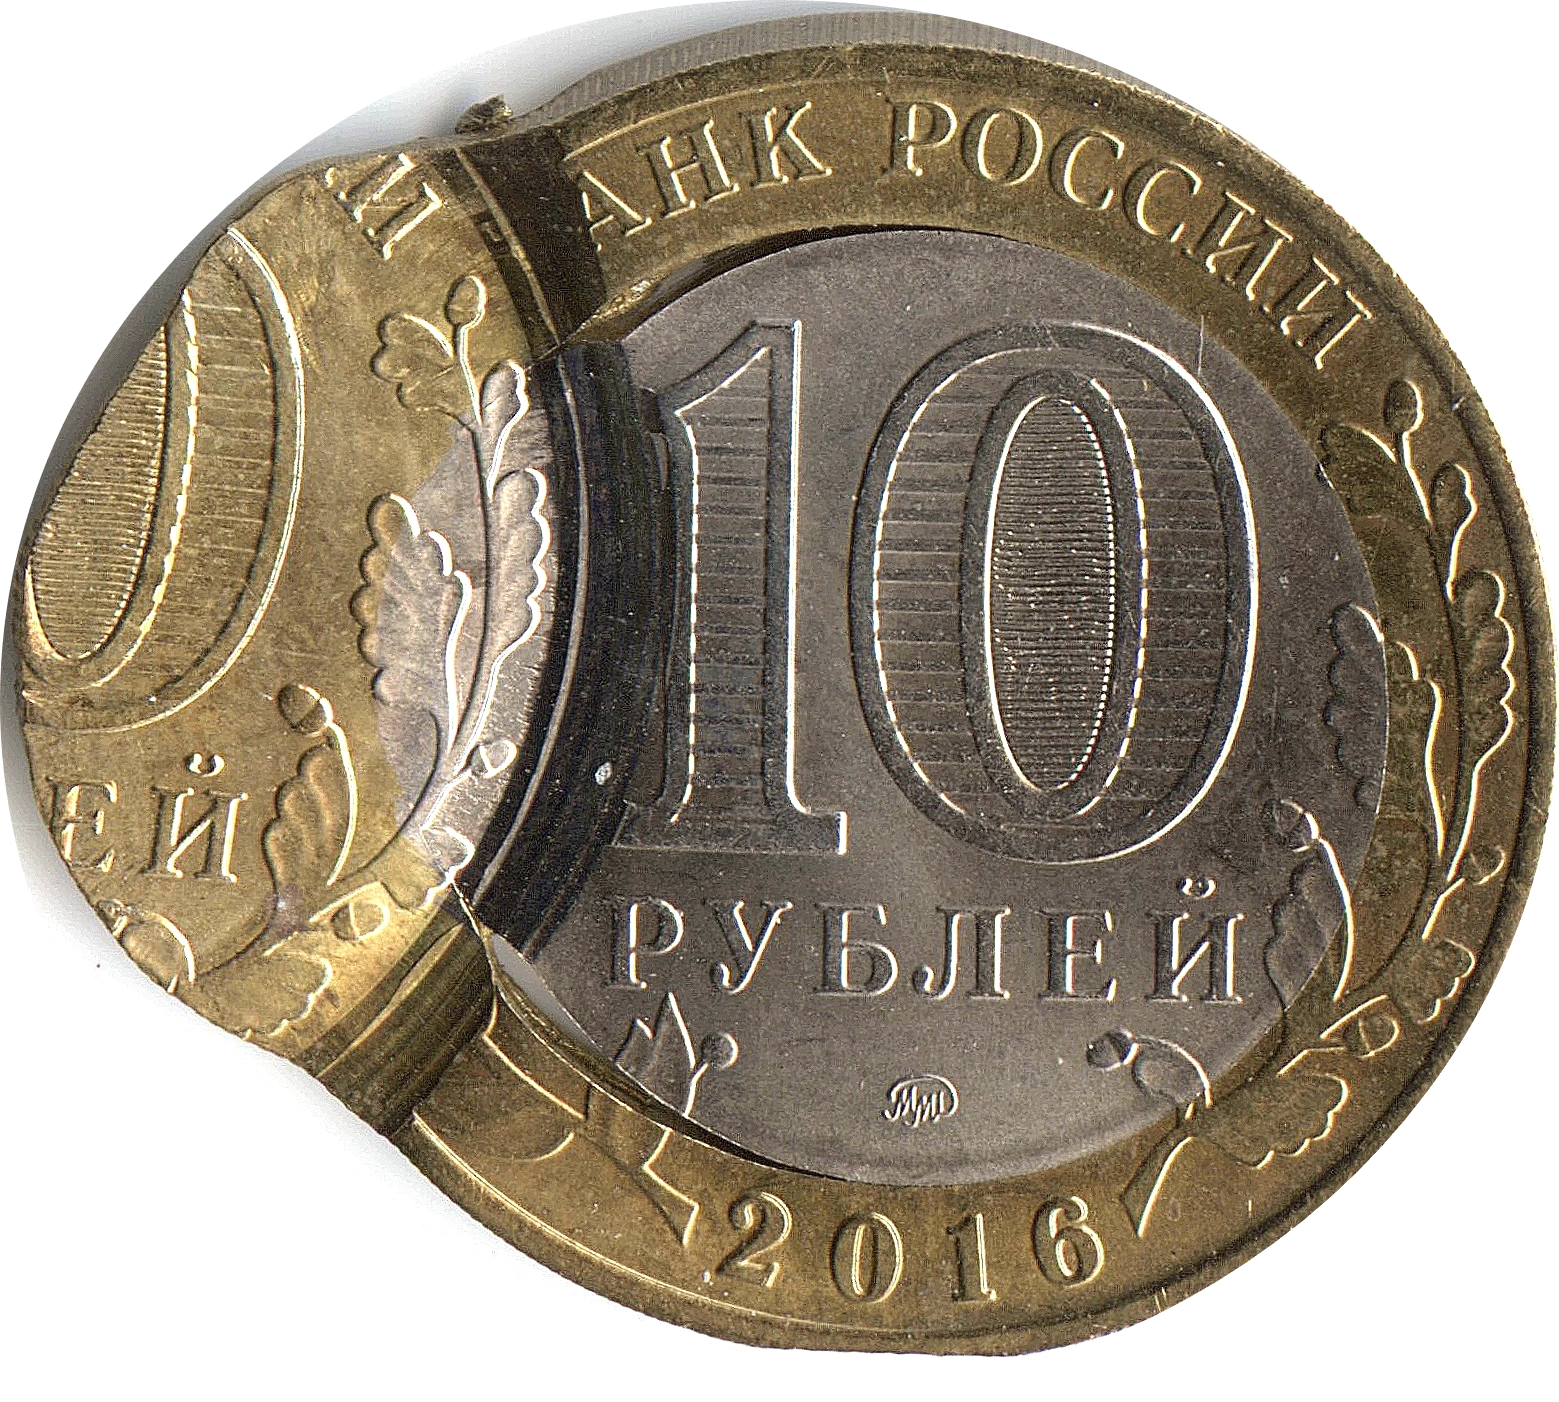 Ценные 10 рублевые монеты. Редкие десятирублевые монеты 2013 года. Ценные юбилейные 10 рублевые монеты. Ценные юбилейные монеты 10р. Редкие 10 рублей россии